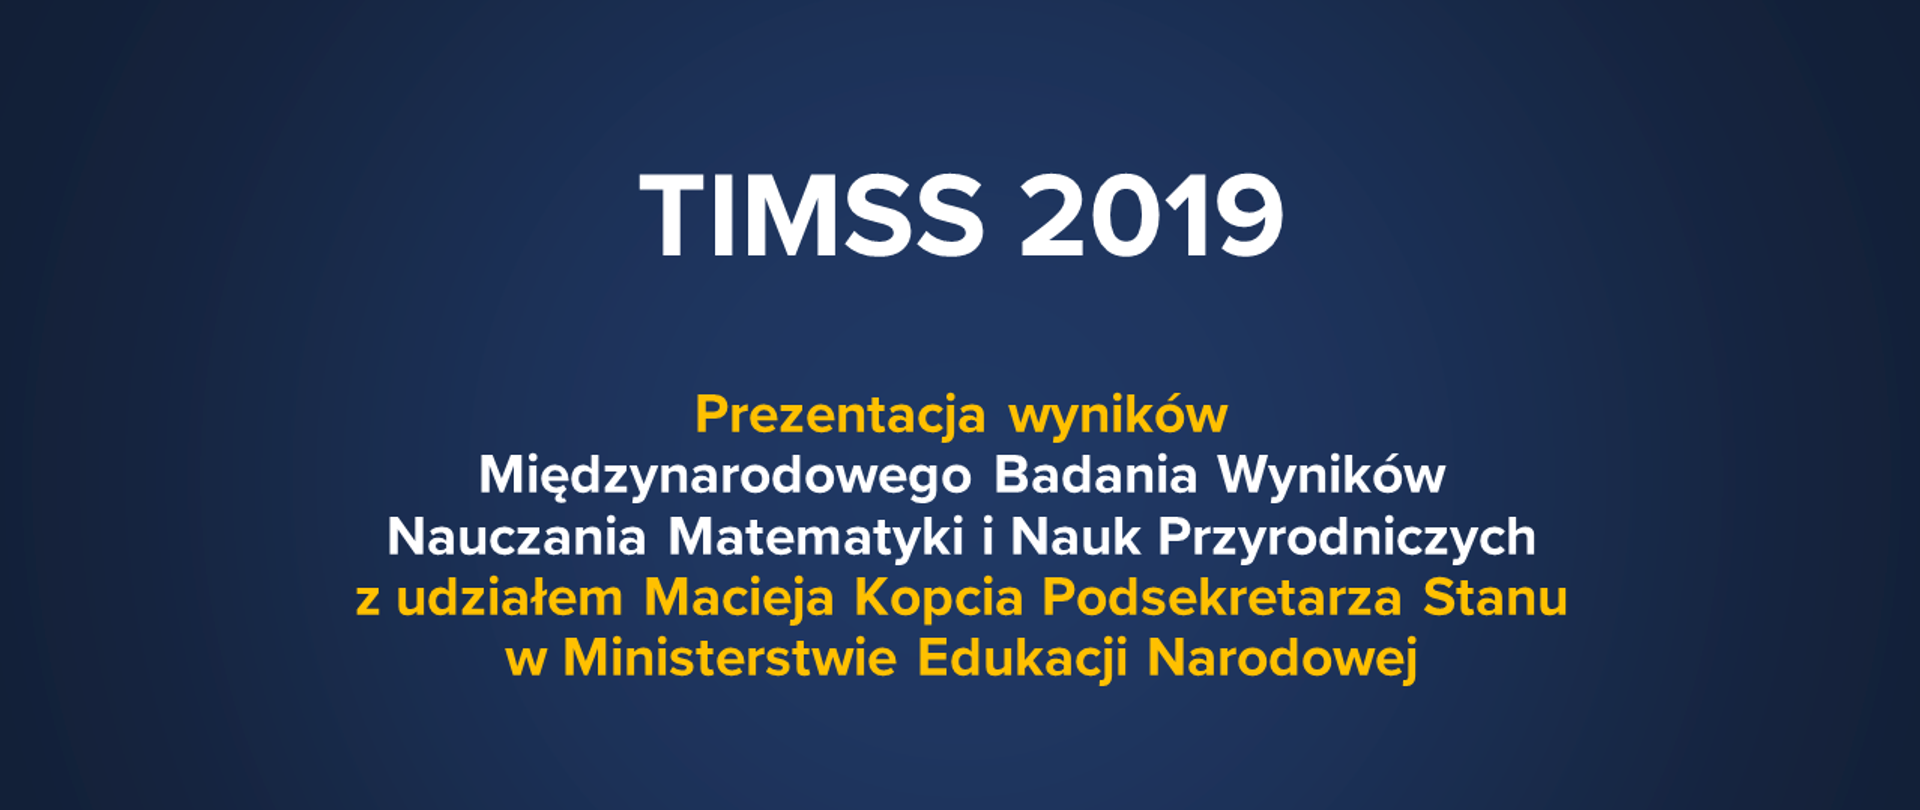 Prezentacja wyników badania nauczania matematyki i nauk przyrodniczych TIMSS 2019. 